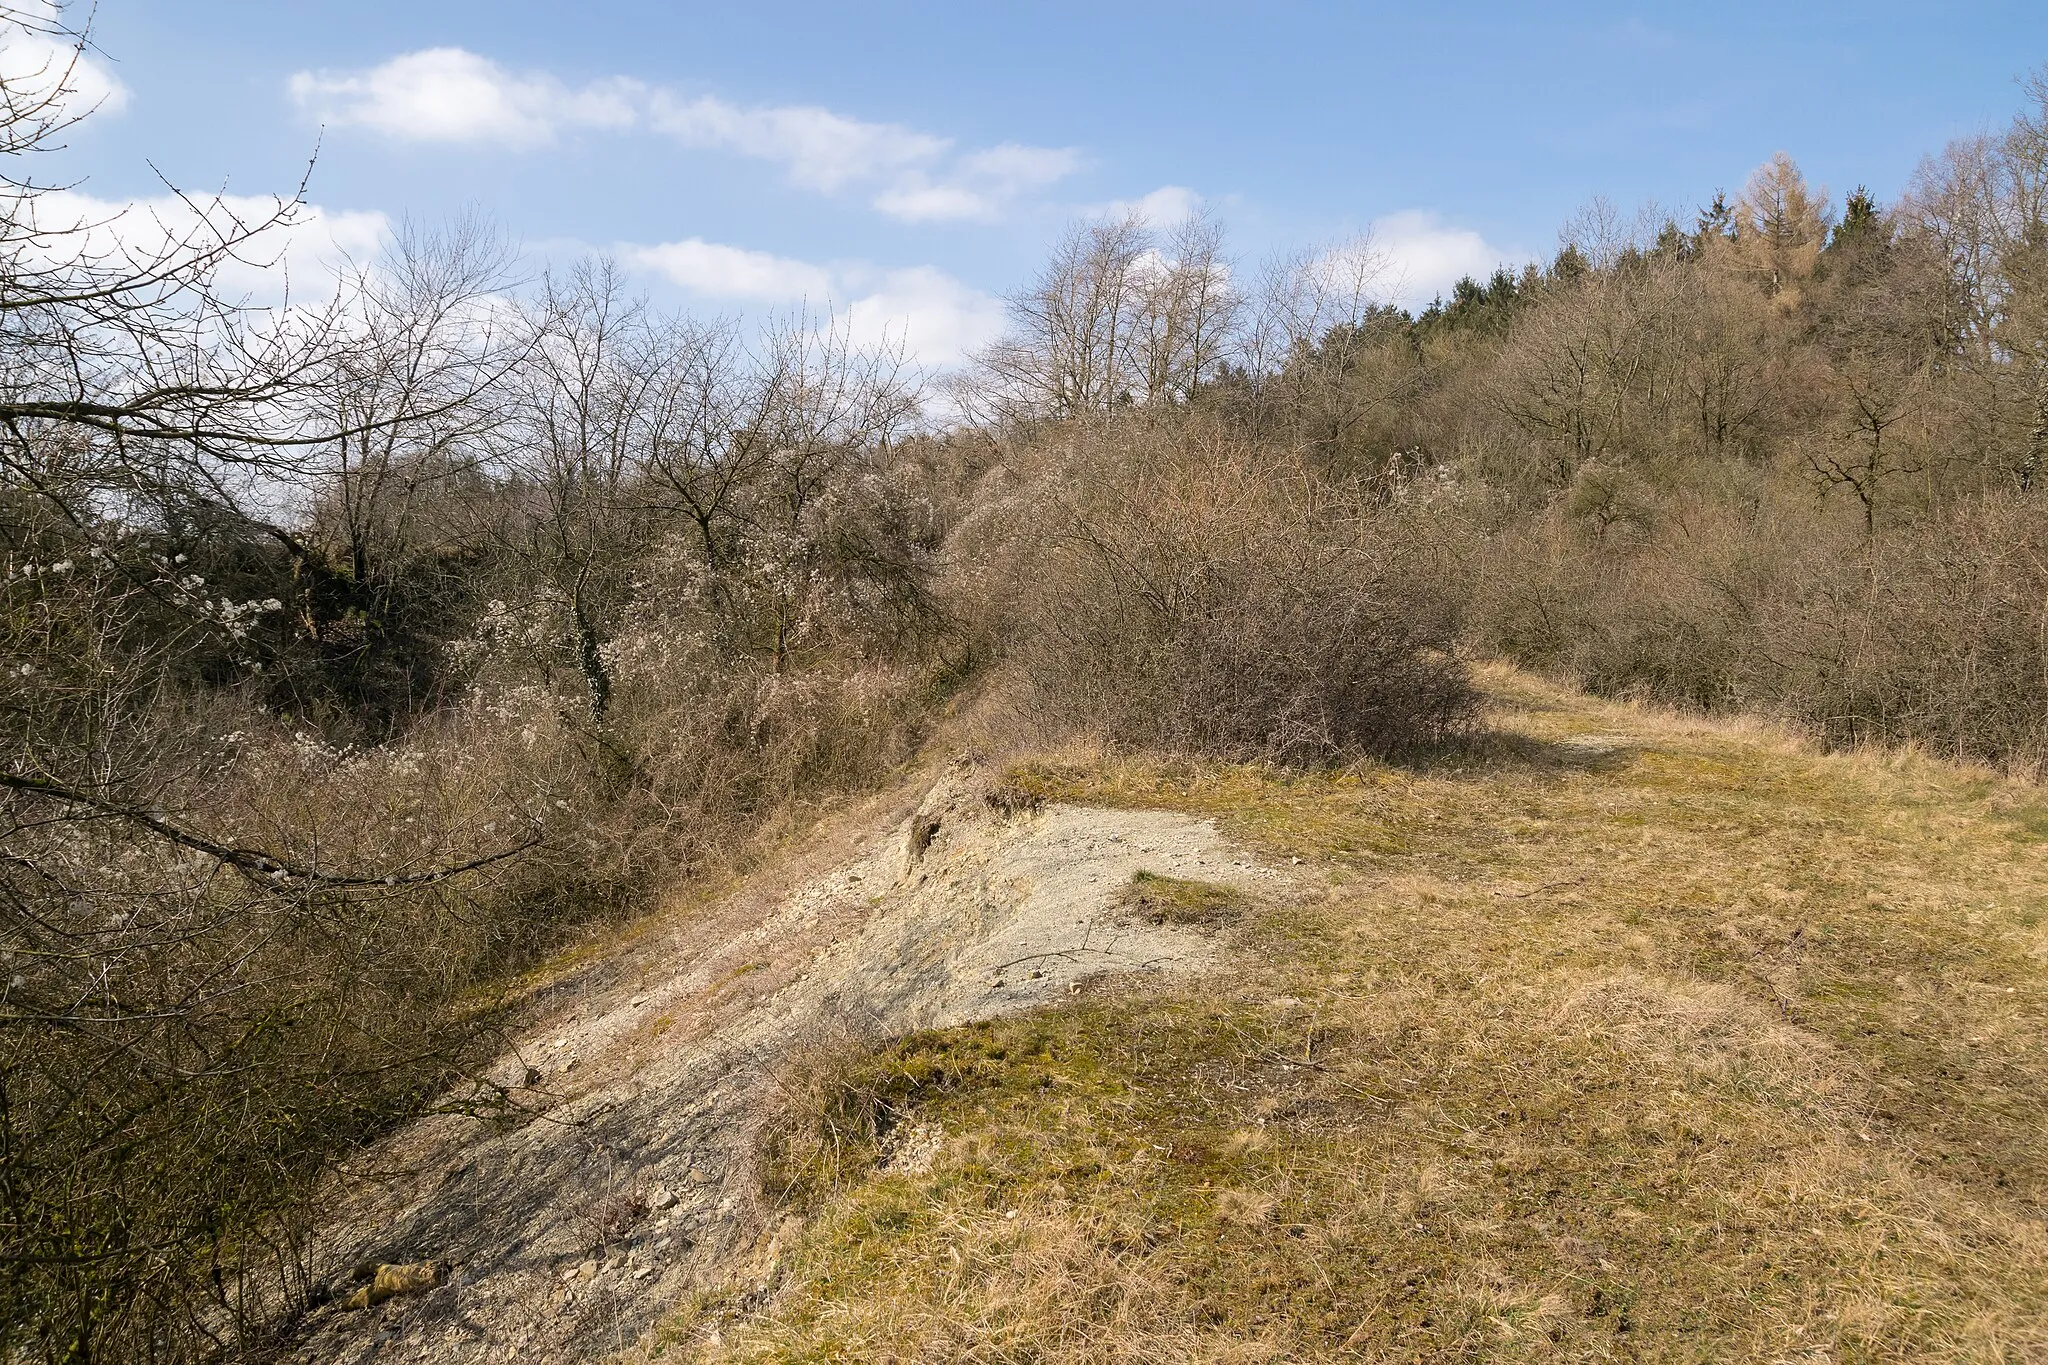 Photo showing: Naturdenkmal Mergelkuhle und gesetzlich geschütztes Biotop Kalkmagerrasen am Trophagener Berg, Lemgo, Kreis Lippe